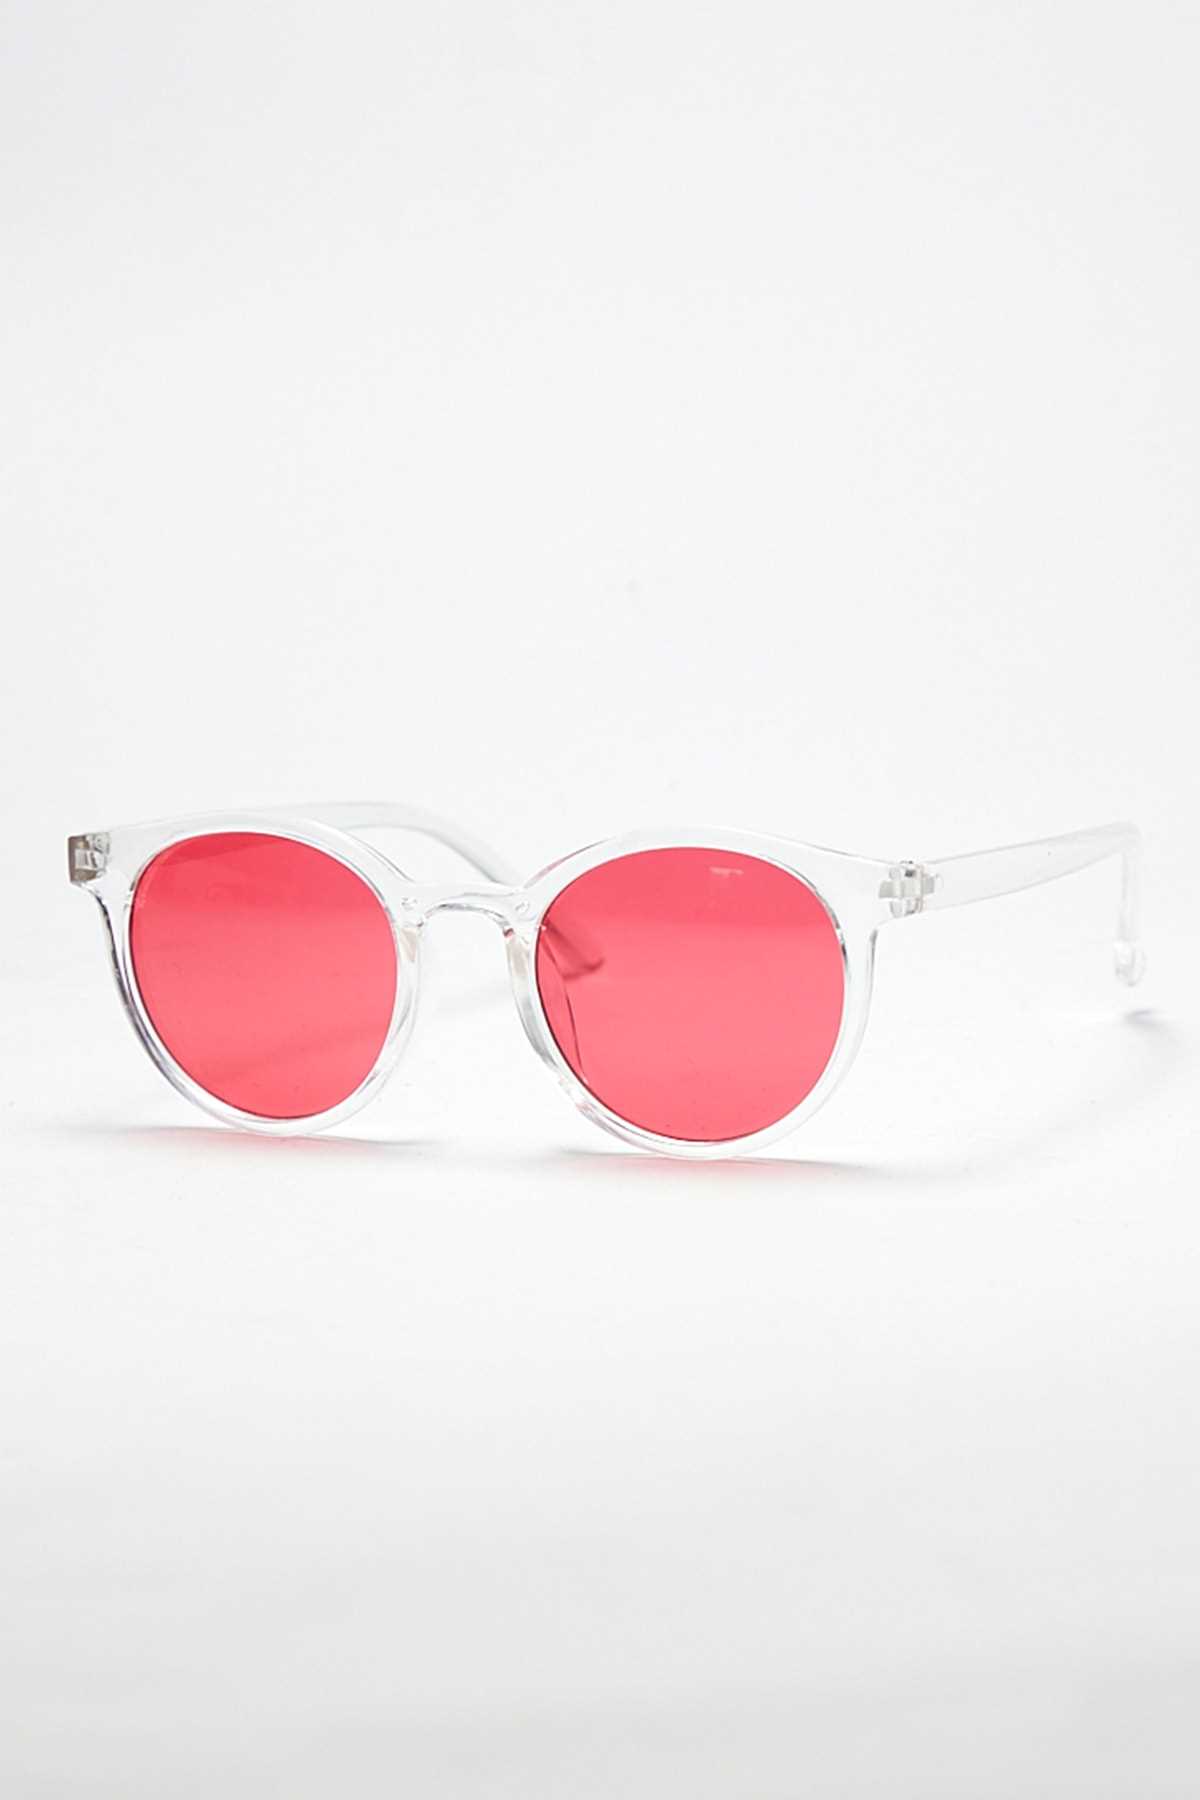 خرید عینک آفتابی جدید برند Nilu Moda رنگ صورتی ty130168479